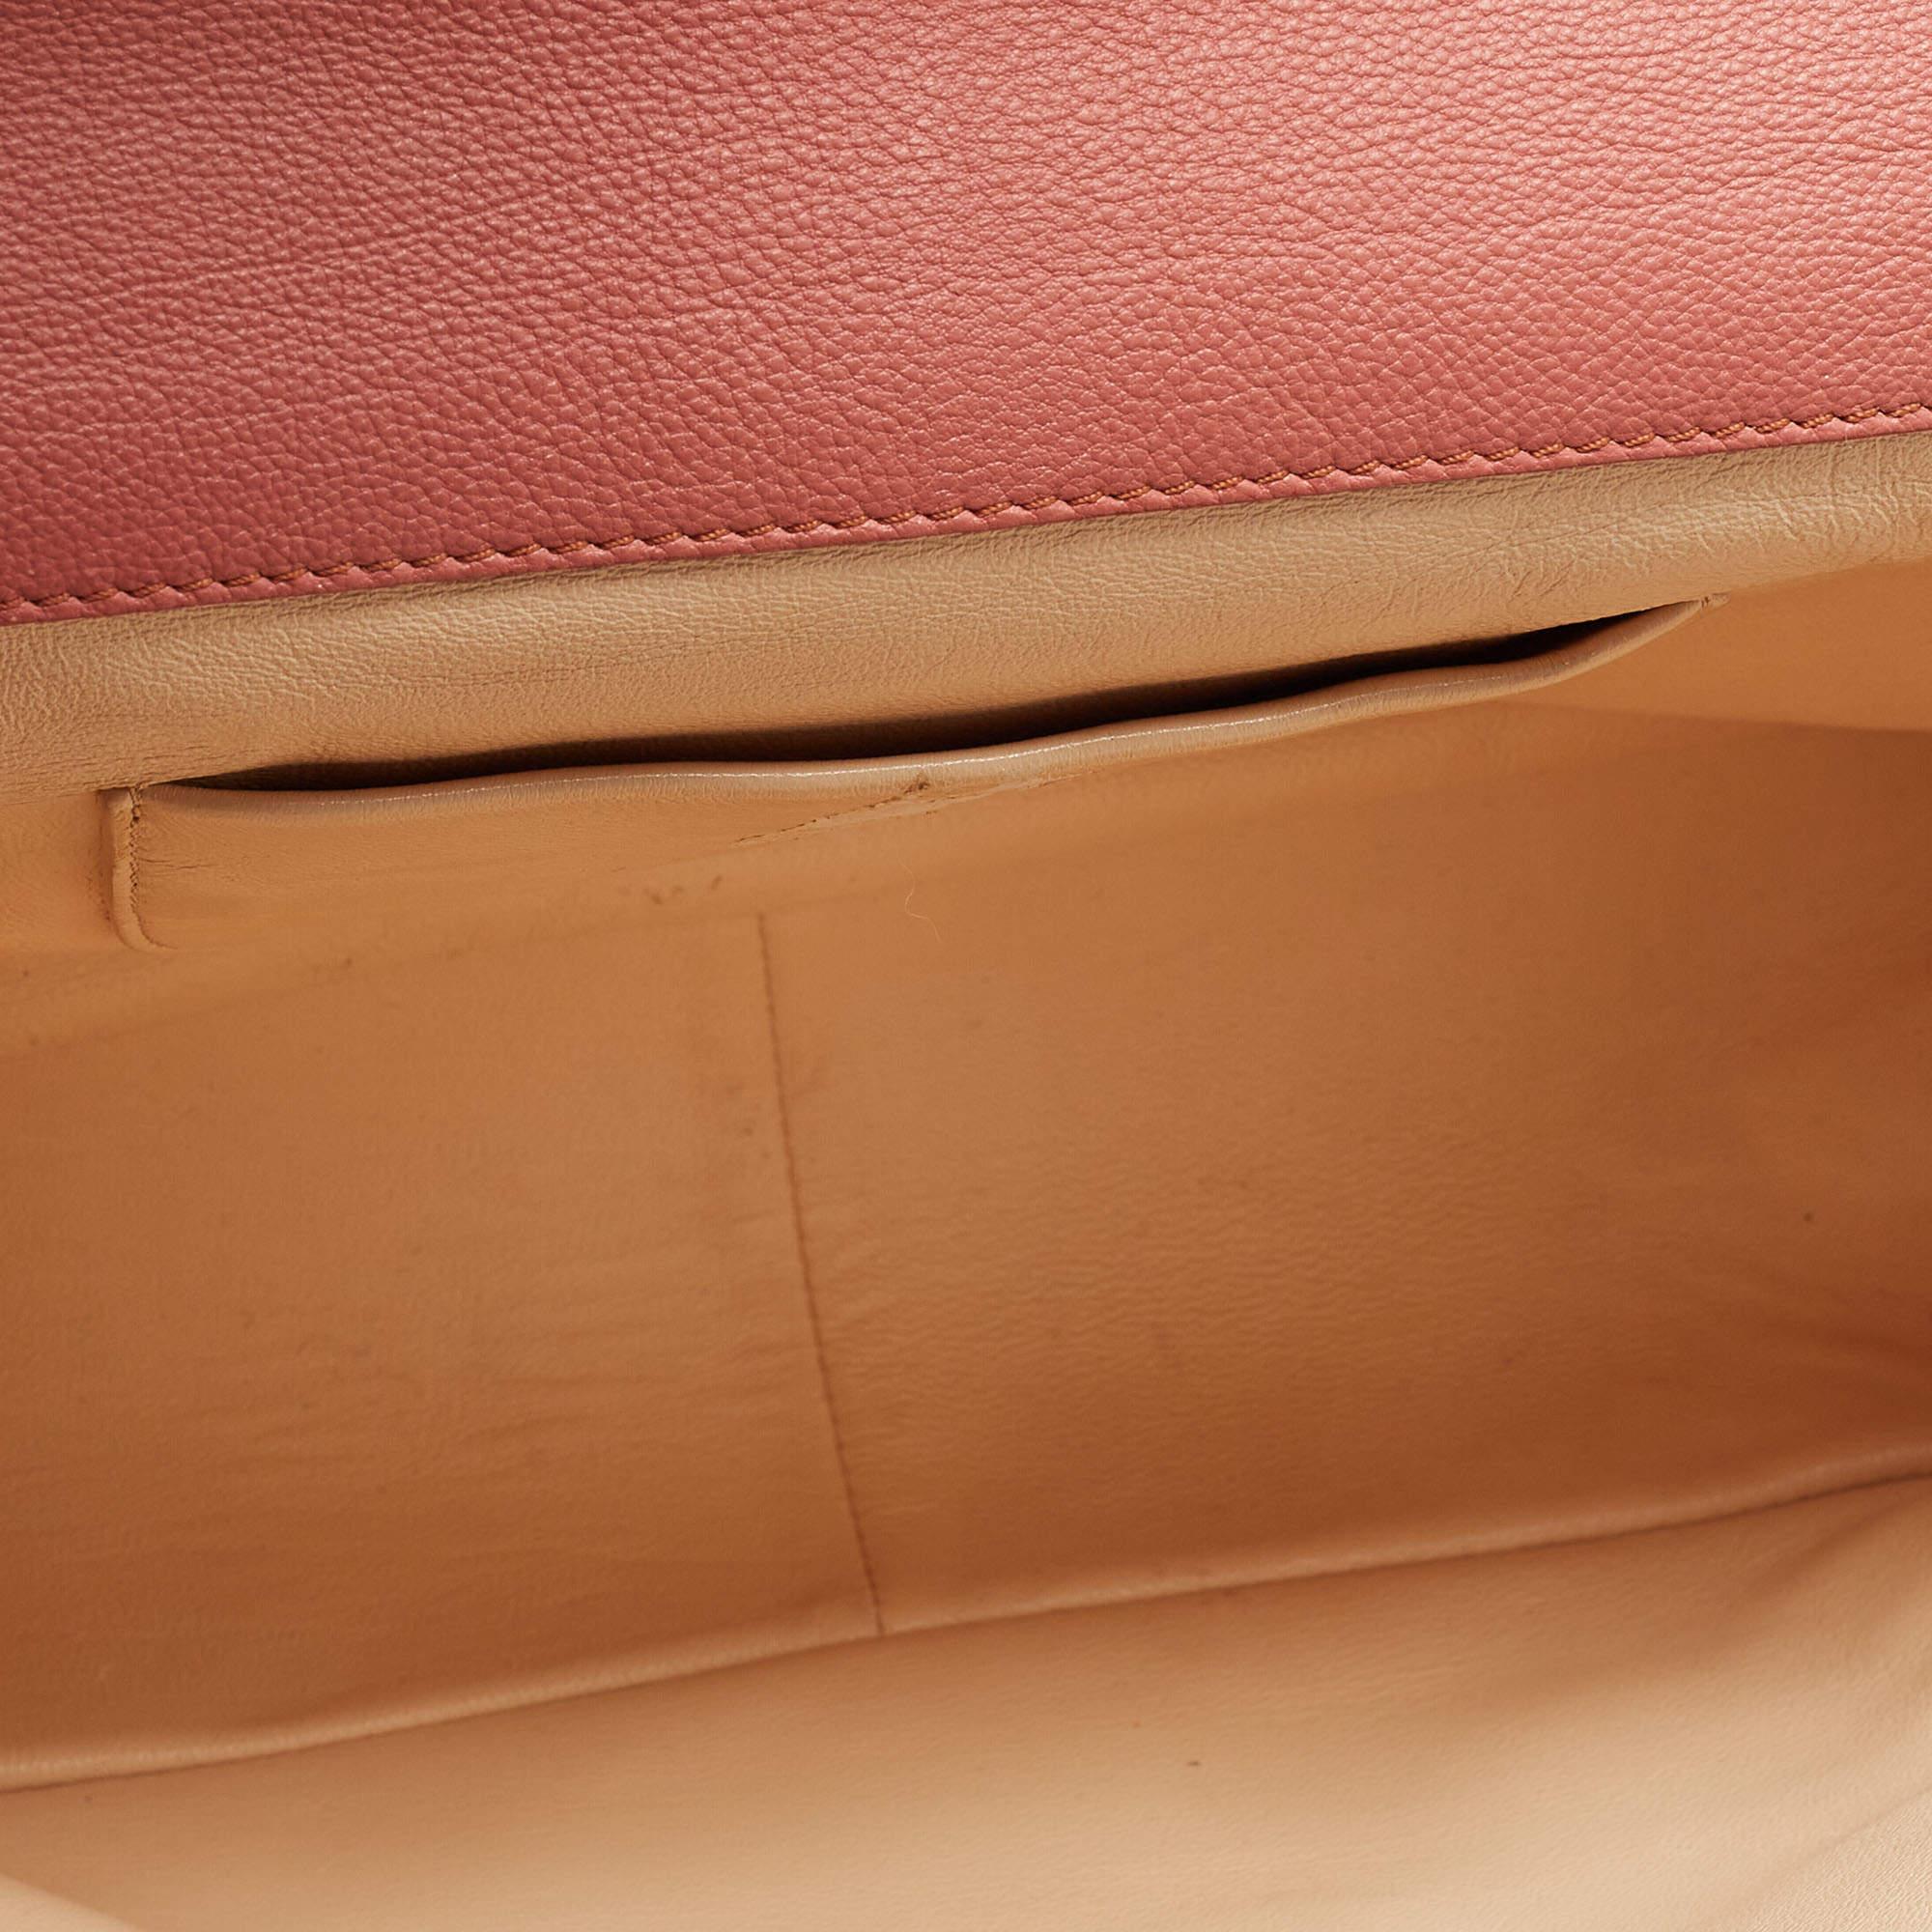 Chloe Old Rose Leather Large Elsie Shoulder Bag In Good Condition For Sale In Dubai, Al Qouz 2